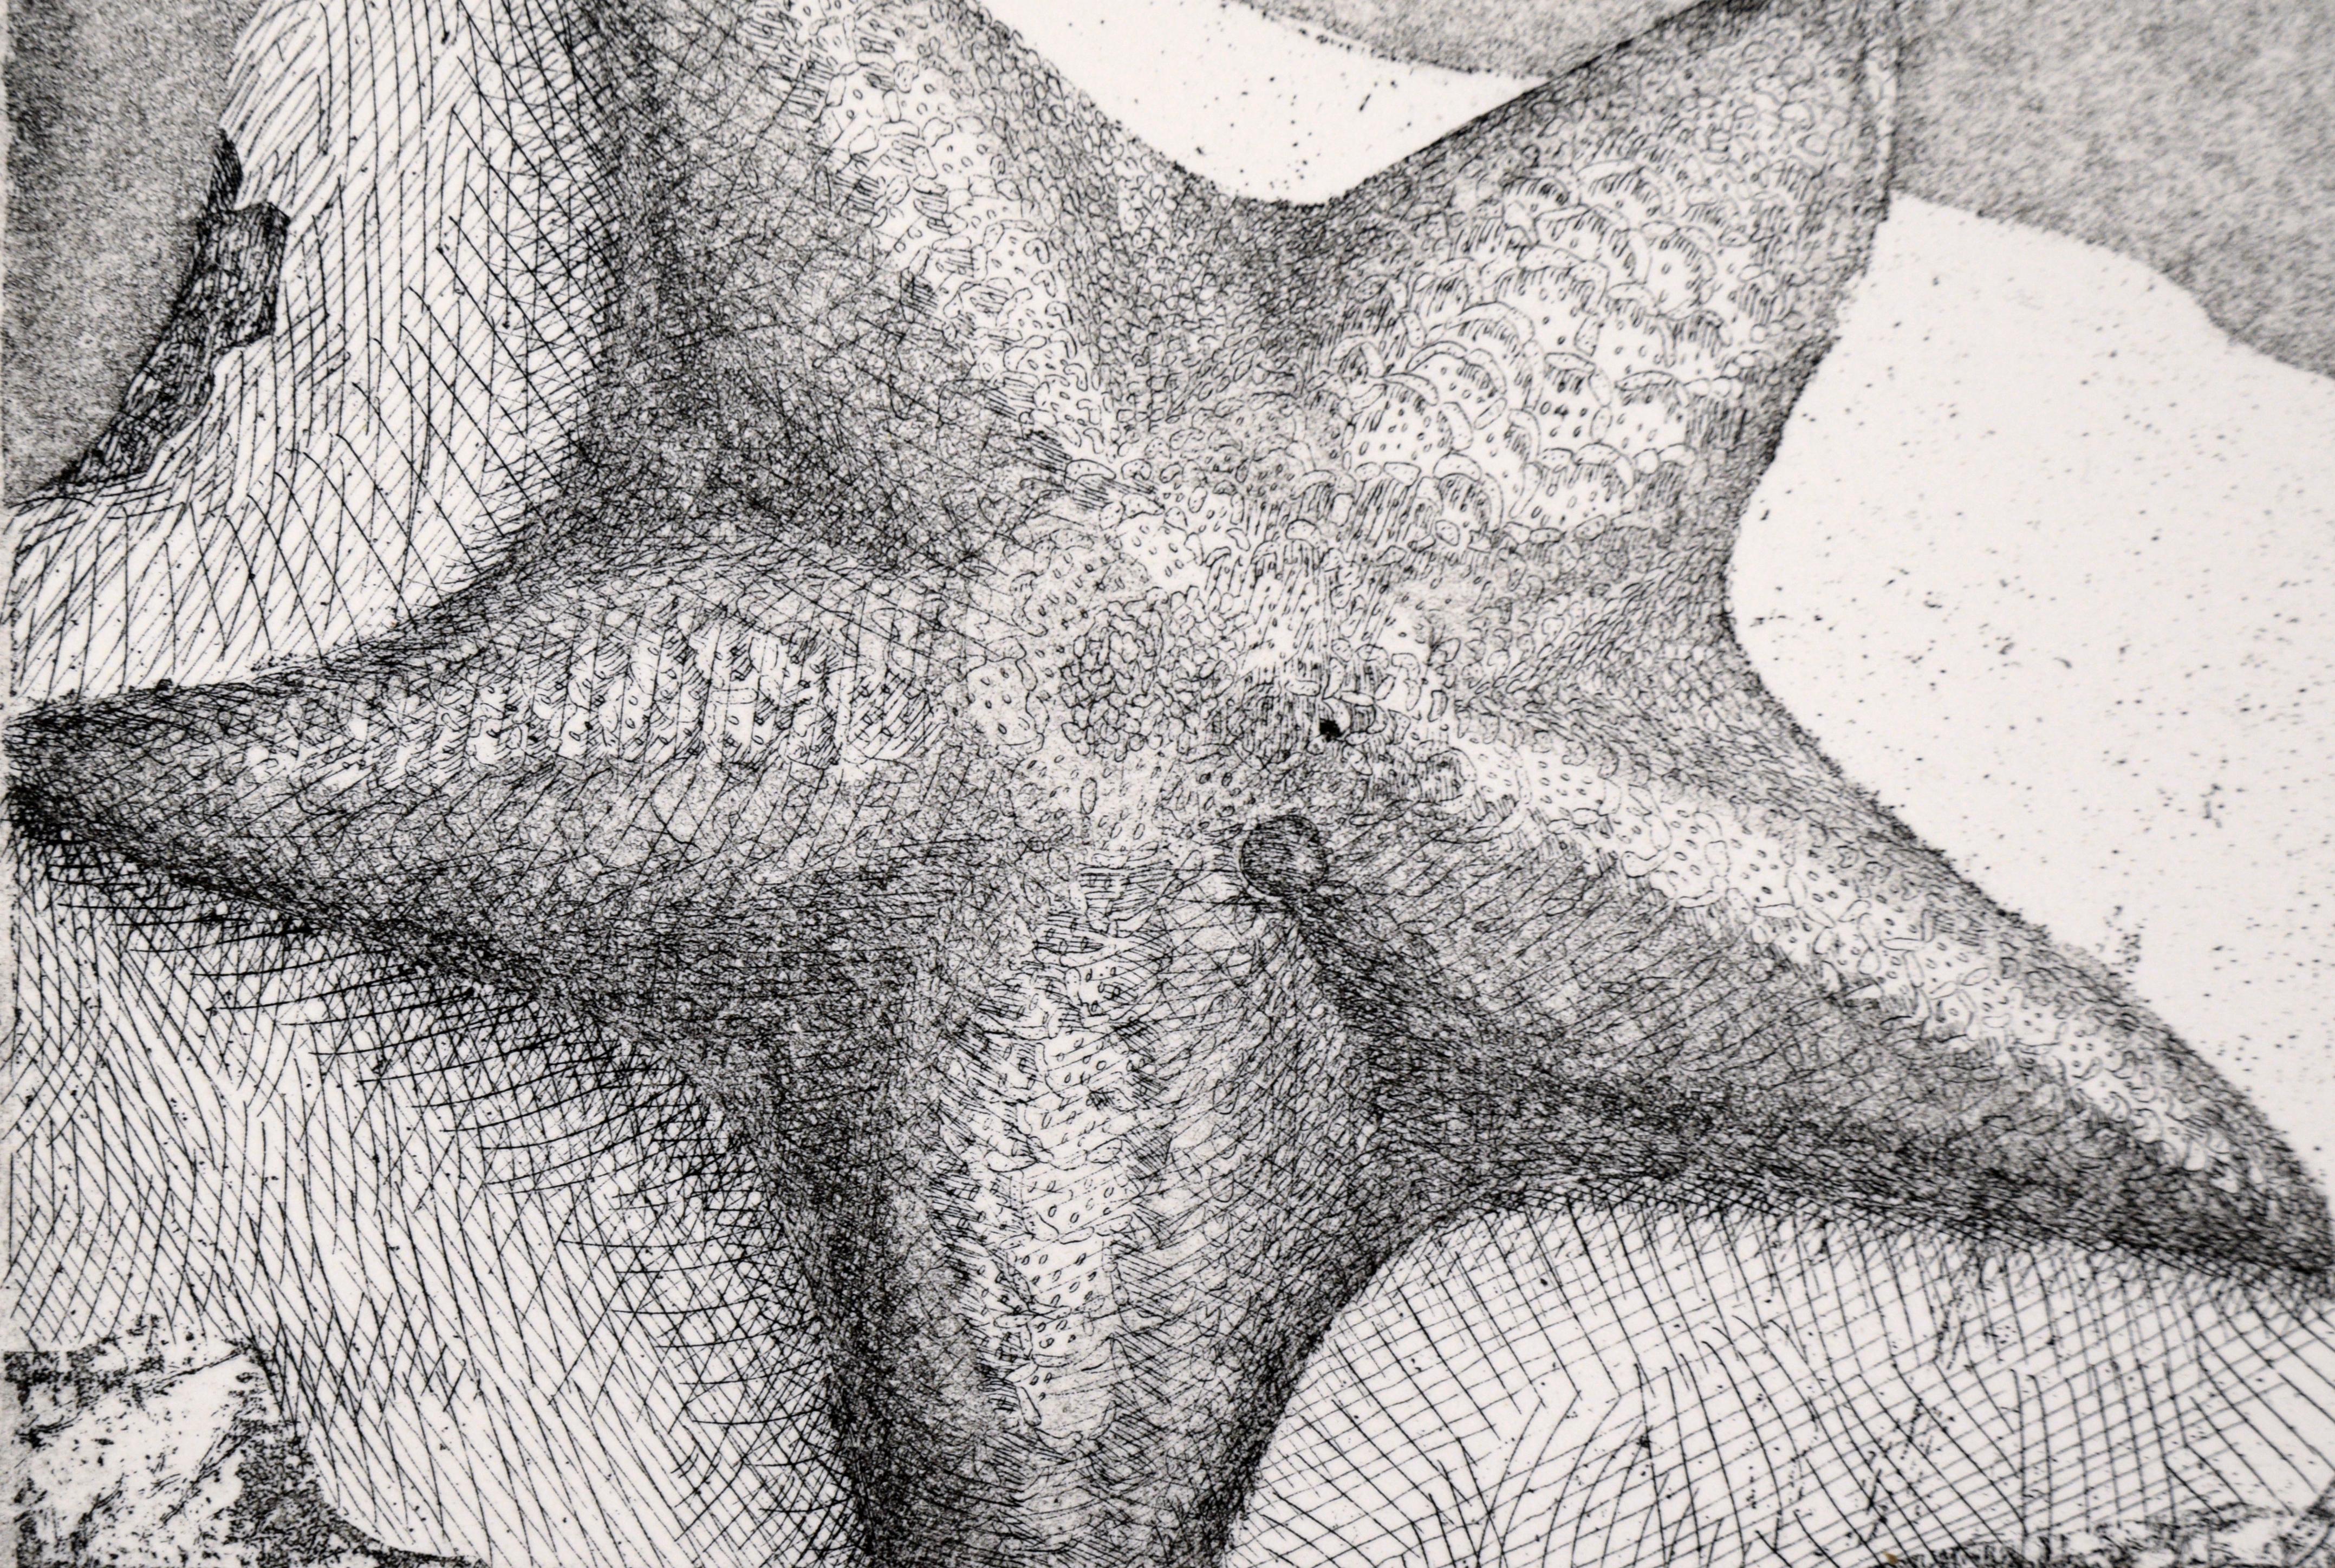 Étoile de mer délicieusement détaillée au bord de la mer par l'artiste inconnu J. Brown (20e siècle). Une étoile de mer est assise au sommet d'un rocher au bord de l'eau. La scène est rendue avec beaucoup de détails, montrant la texture de l'étoile